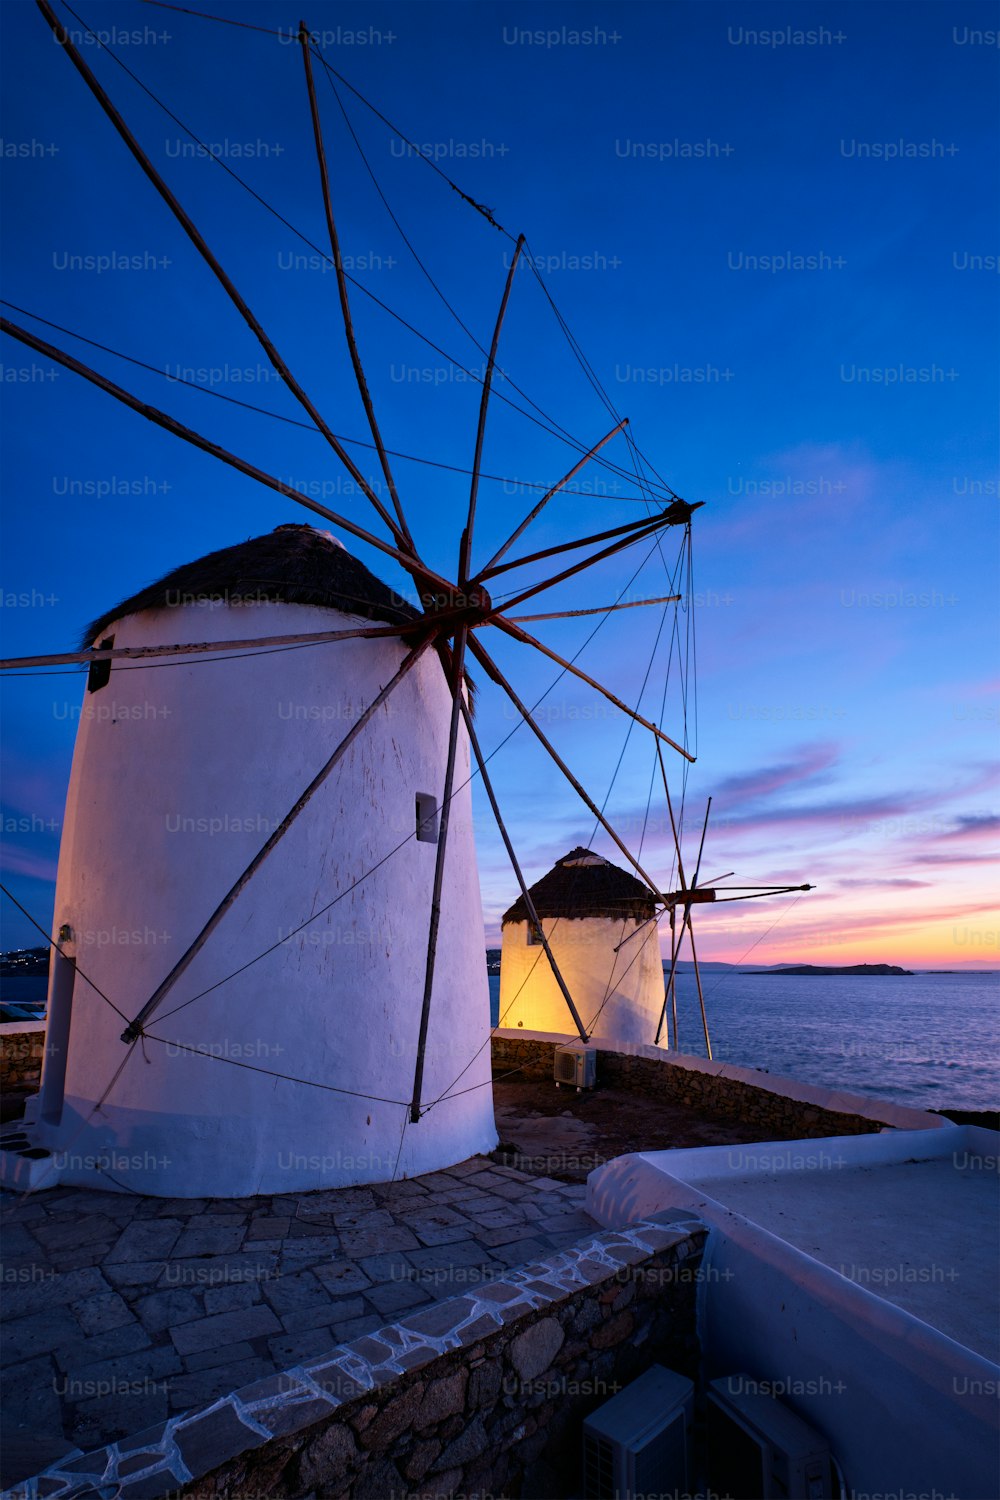 Vista panorámica de los famosos molinos de viento de la ciudad de Mykonos Chora. Molinos de viento tradicionales griegos en la isla de Mykonos iluminados por la noche, Cícladas, Grecia. Caminar con steadycam.